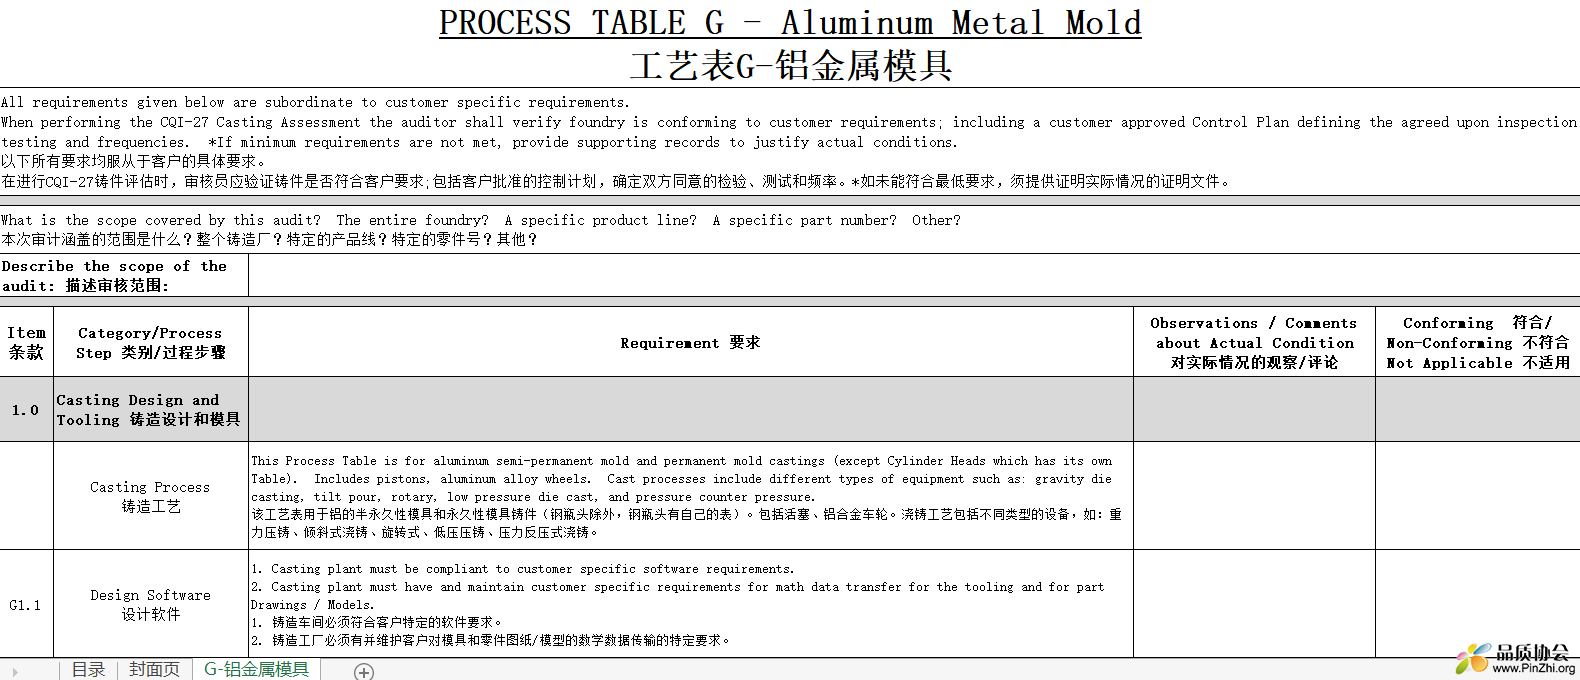 PROCESS TABLE G - Aluminum Metal Mold 工艺表G-铝金属模具